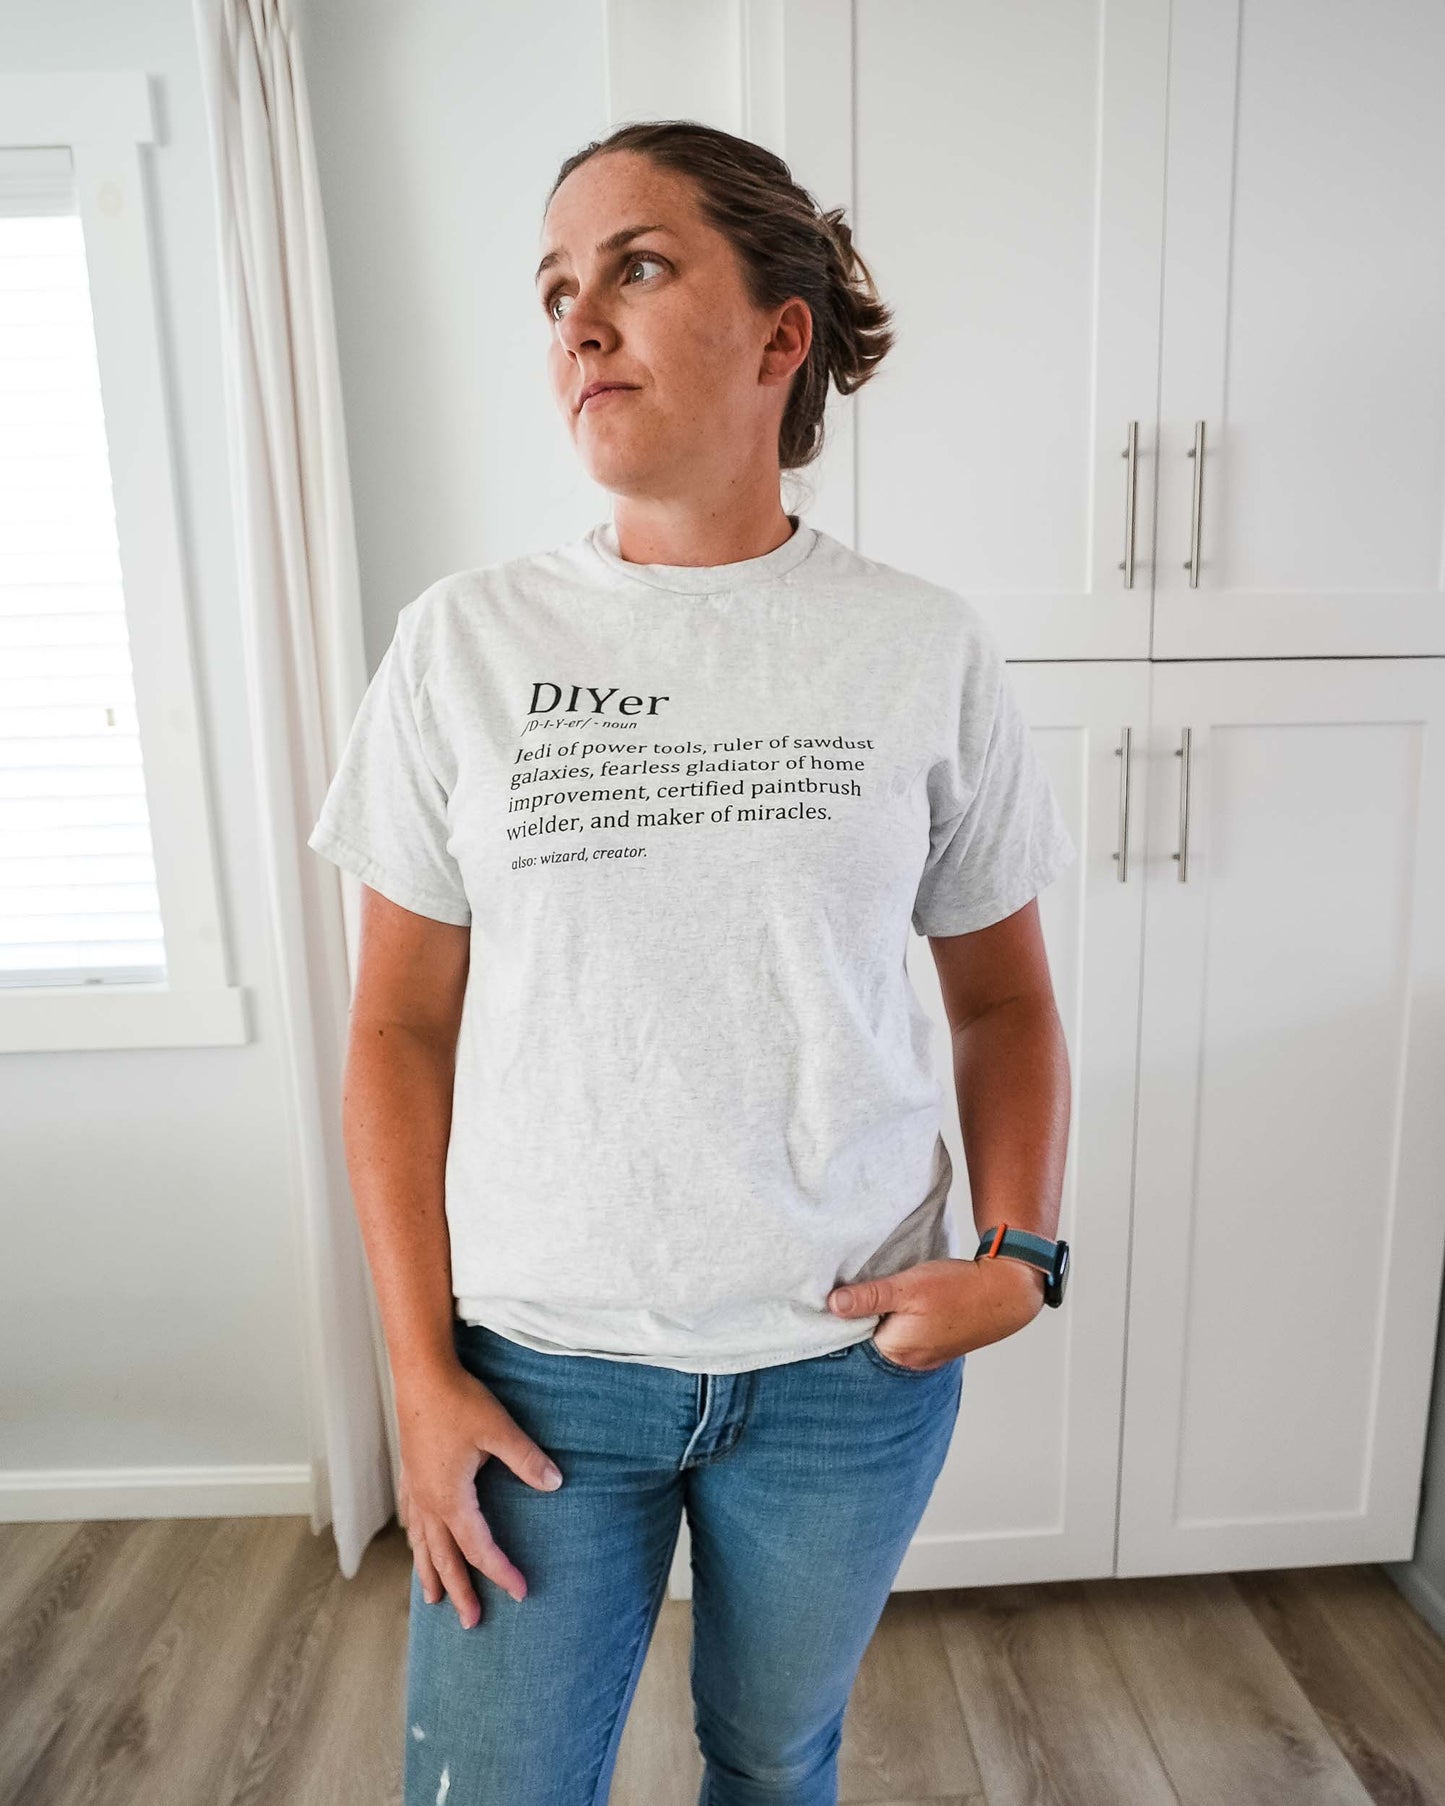 DIYer Definition T-shirt, Funny DIYer Shirt, DIY Shirt, Do It Yourself T-shirt, Gift for DIYer, Power Tool Shirt, Woodworker Shirt